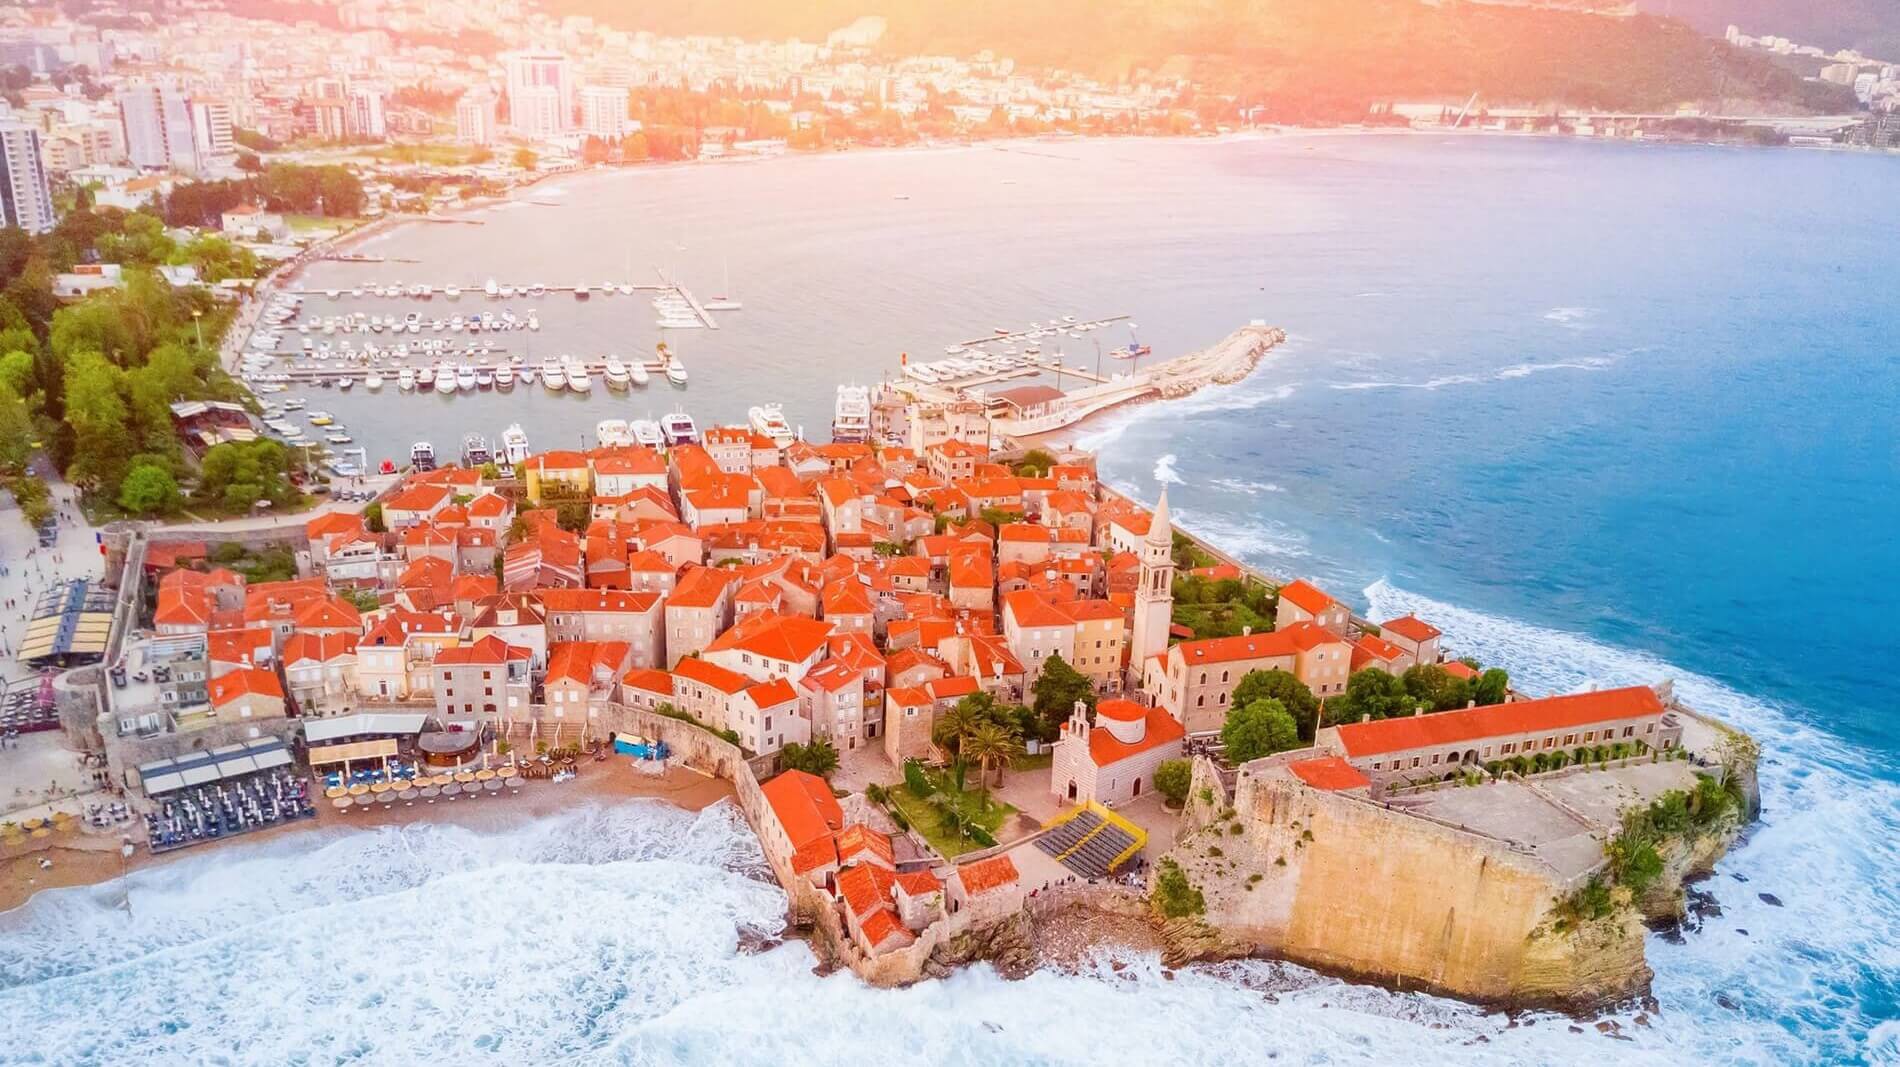 Budva - Adriatic Sea | Croatia Cruise Croatia Cruise